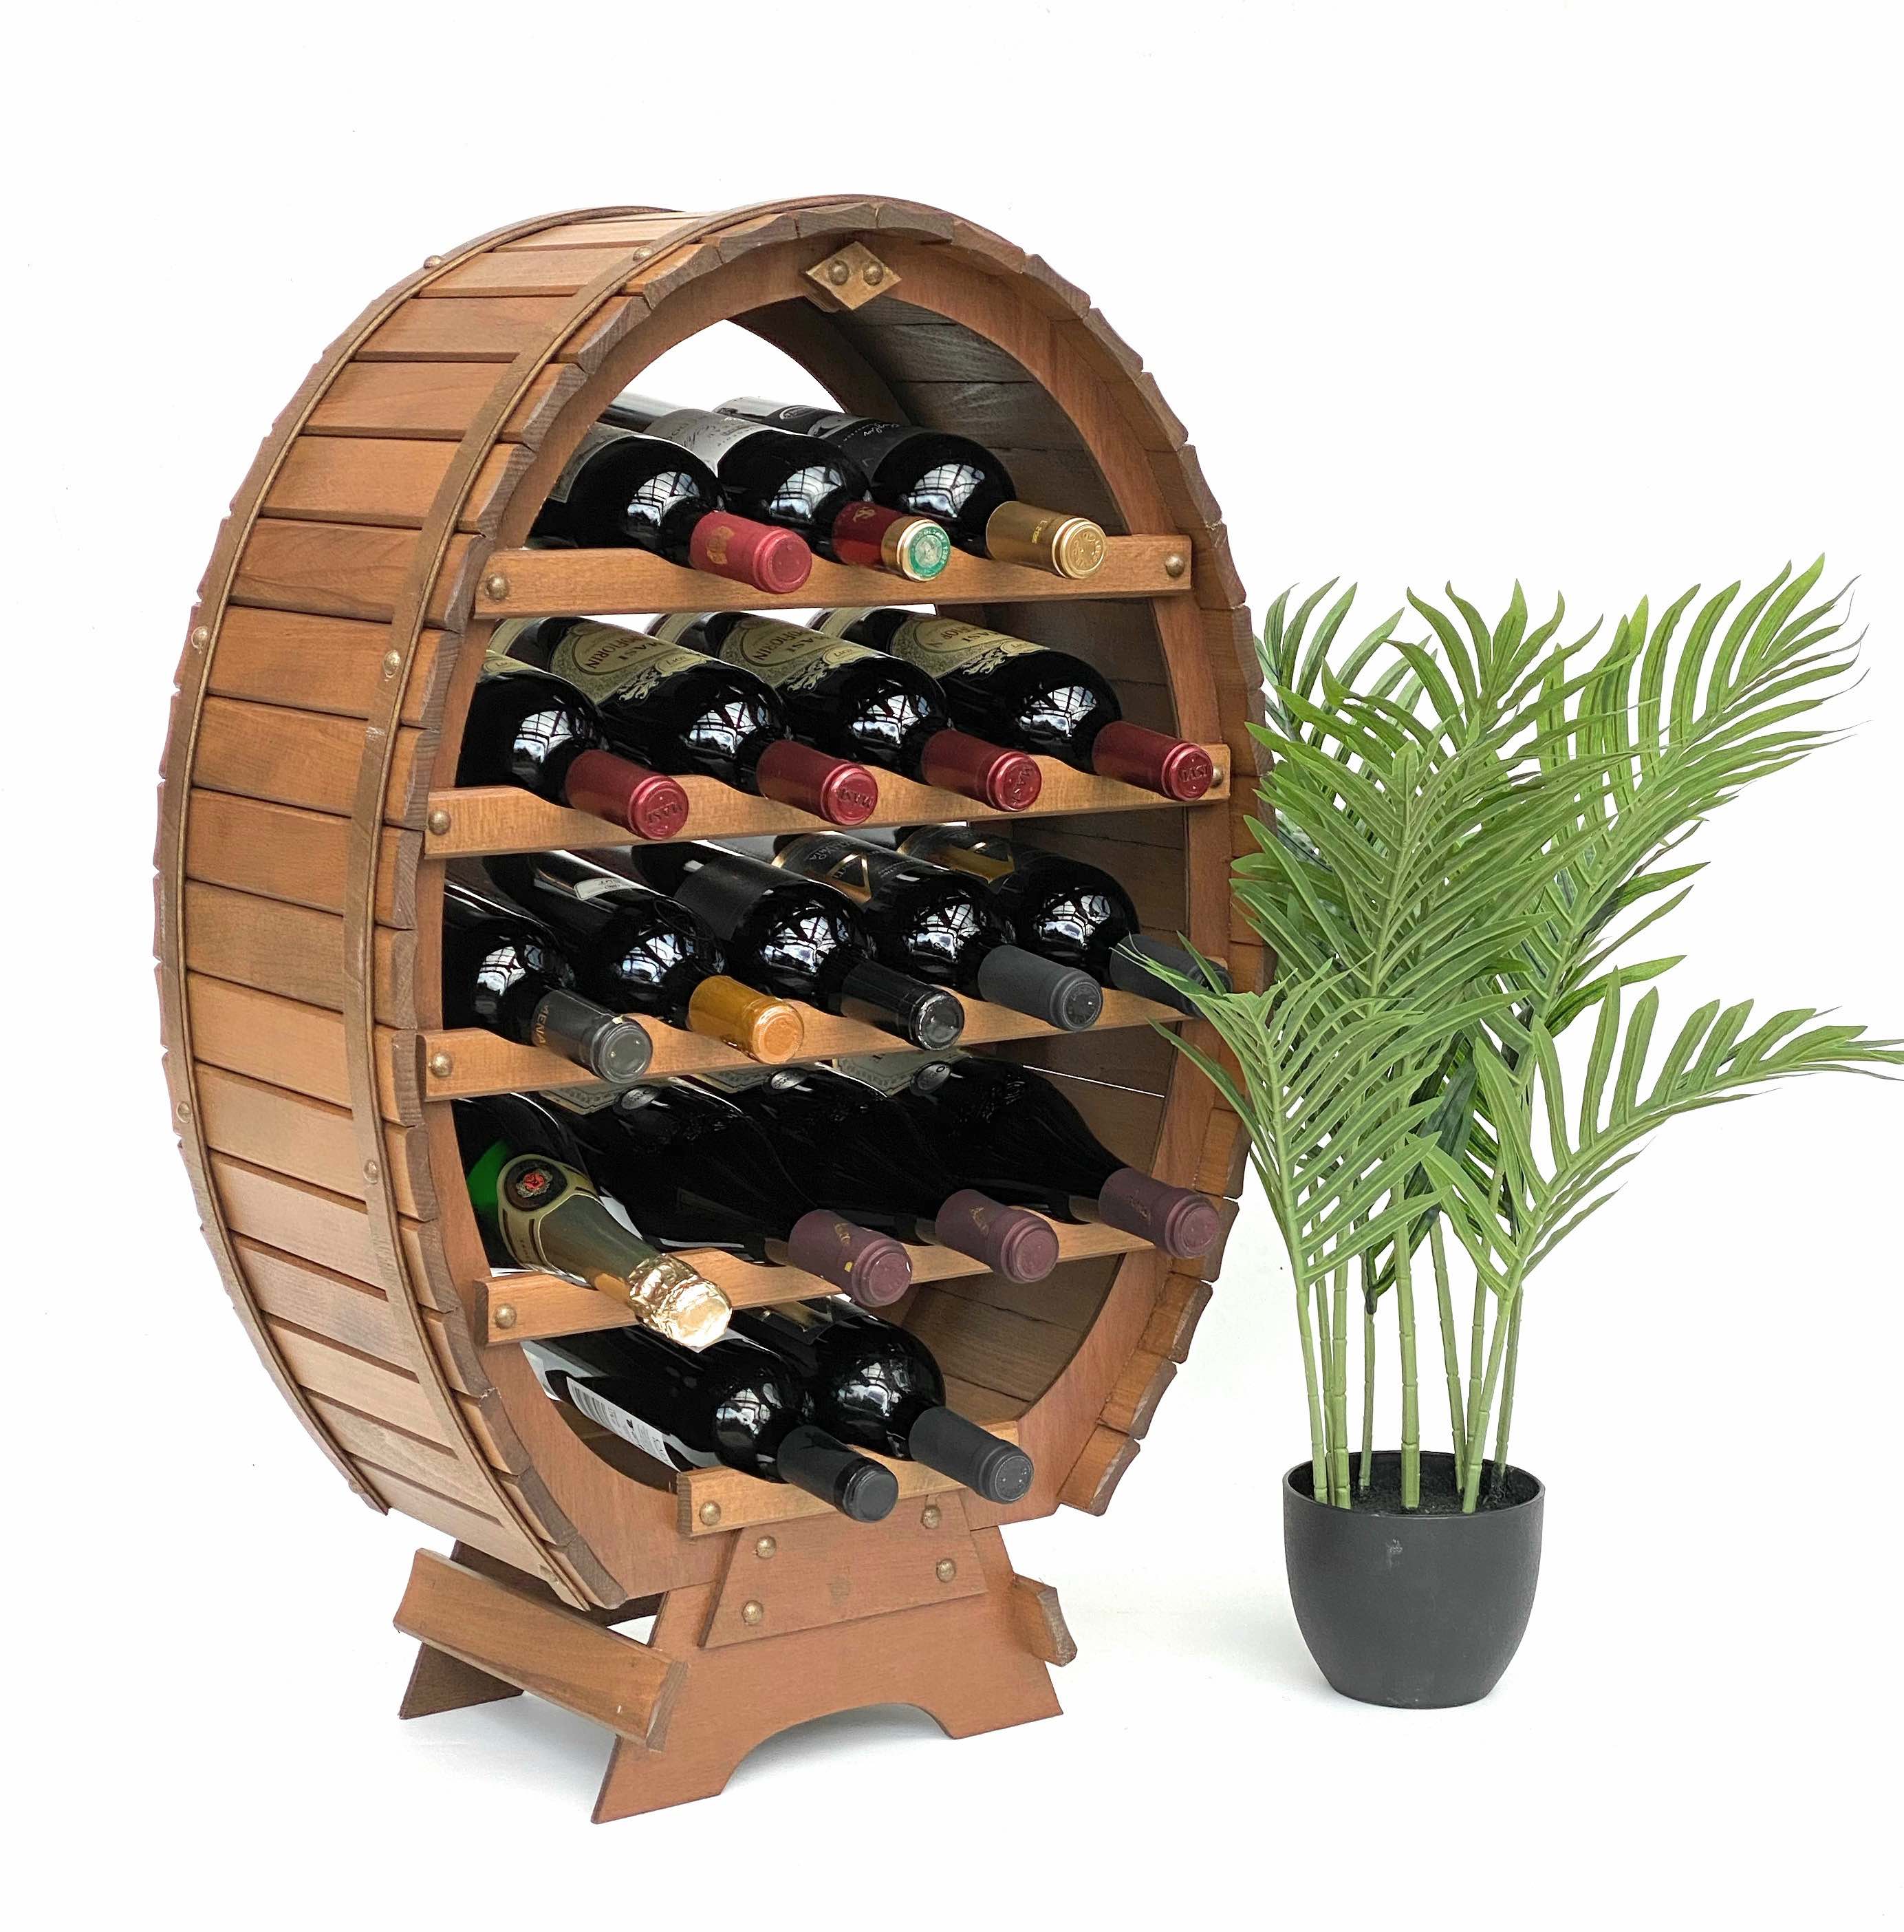 DanDiBo Weinregal Holz Stehend Weinfass 18 Flaschen Braun gebeizt